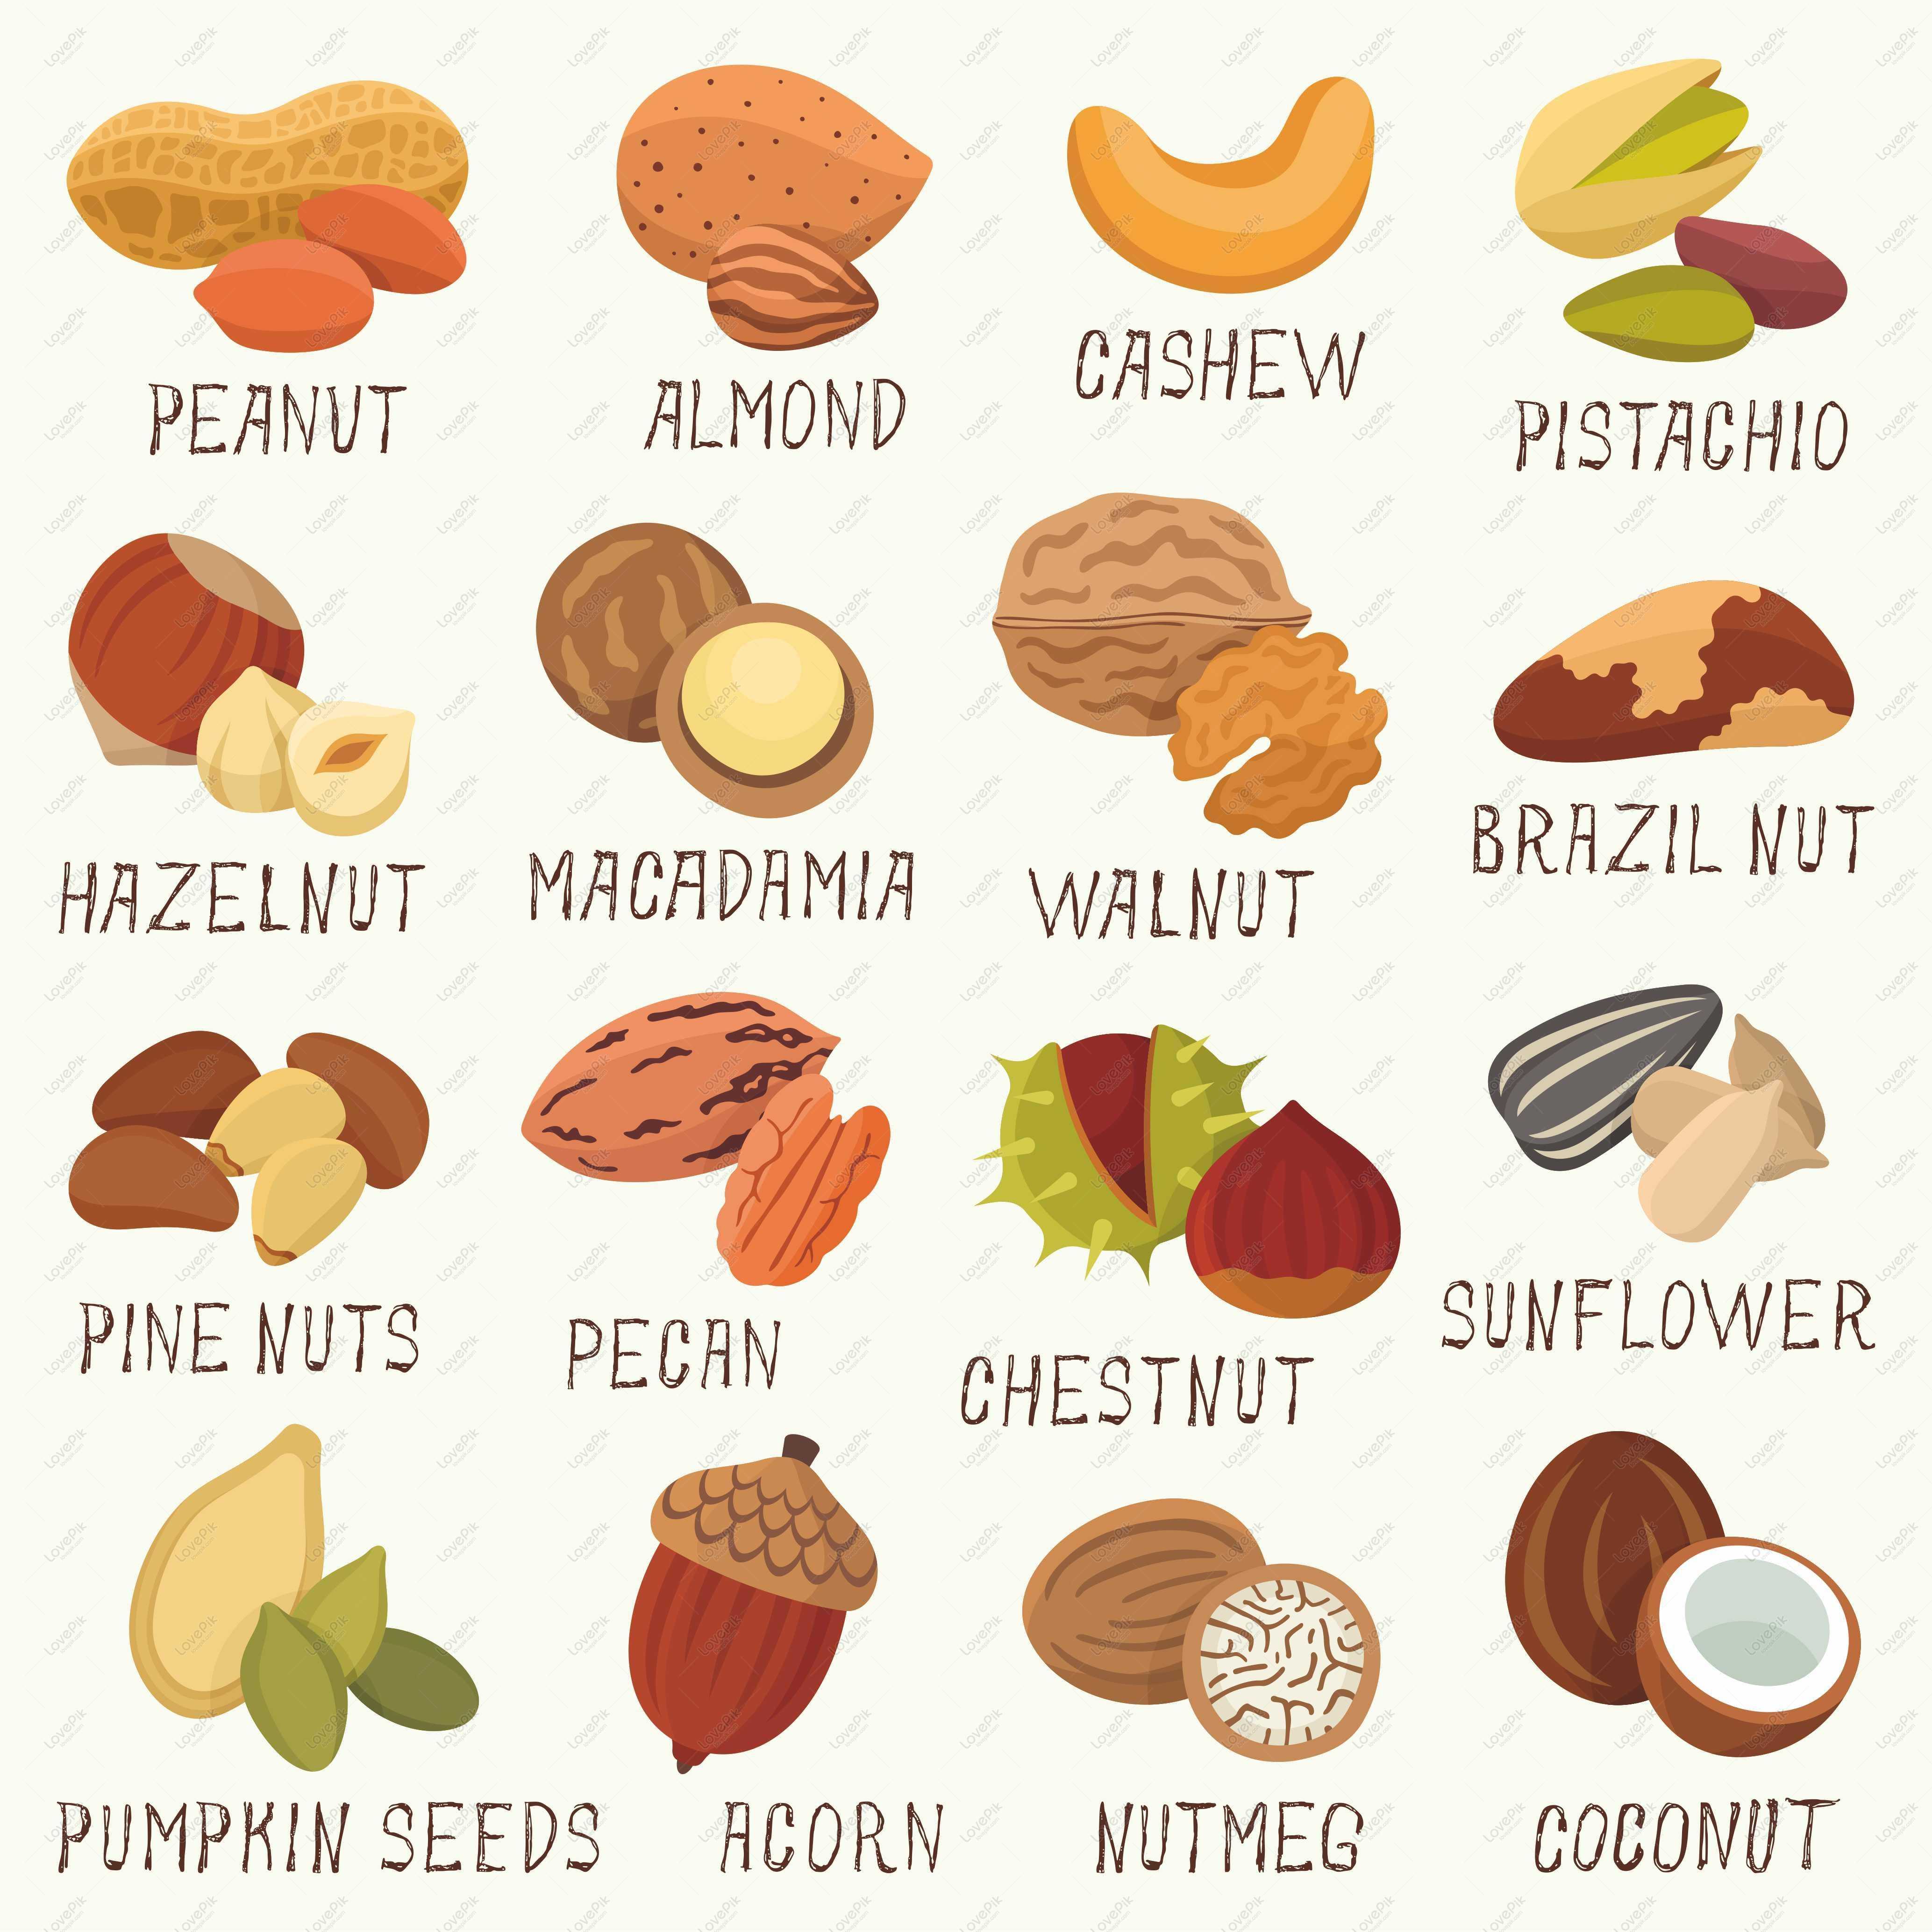 Как переводится nut